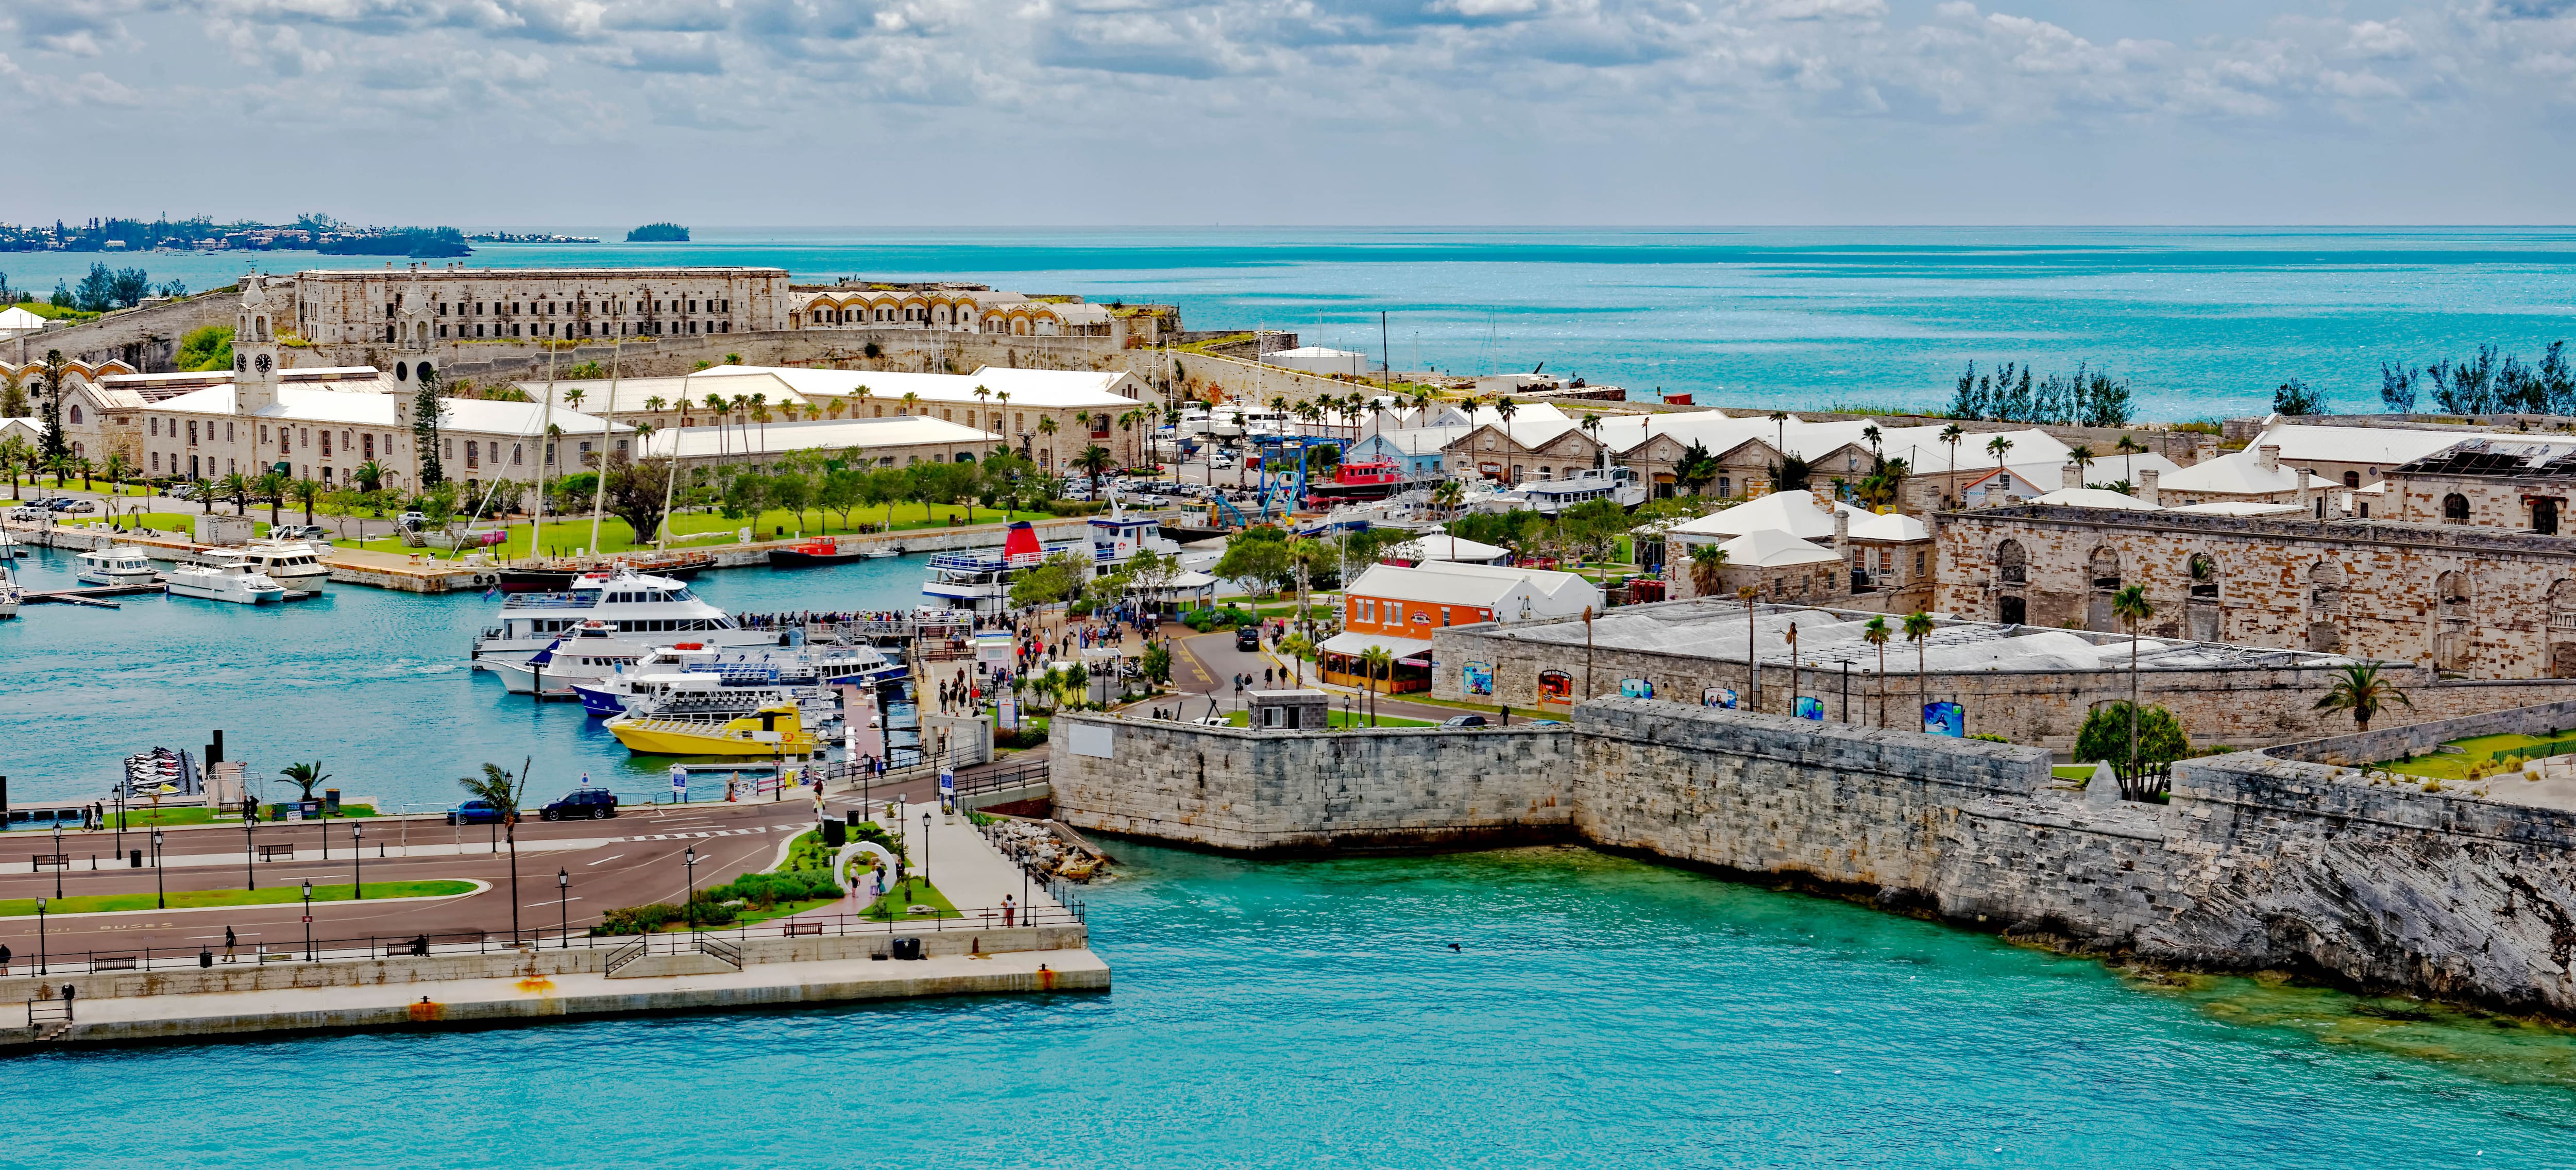 12 Tage Karibik von New York nach Miami: Curaçao, Aruba und Bermudas